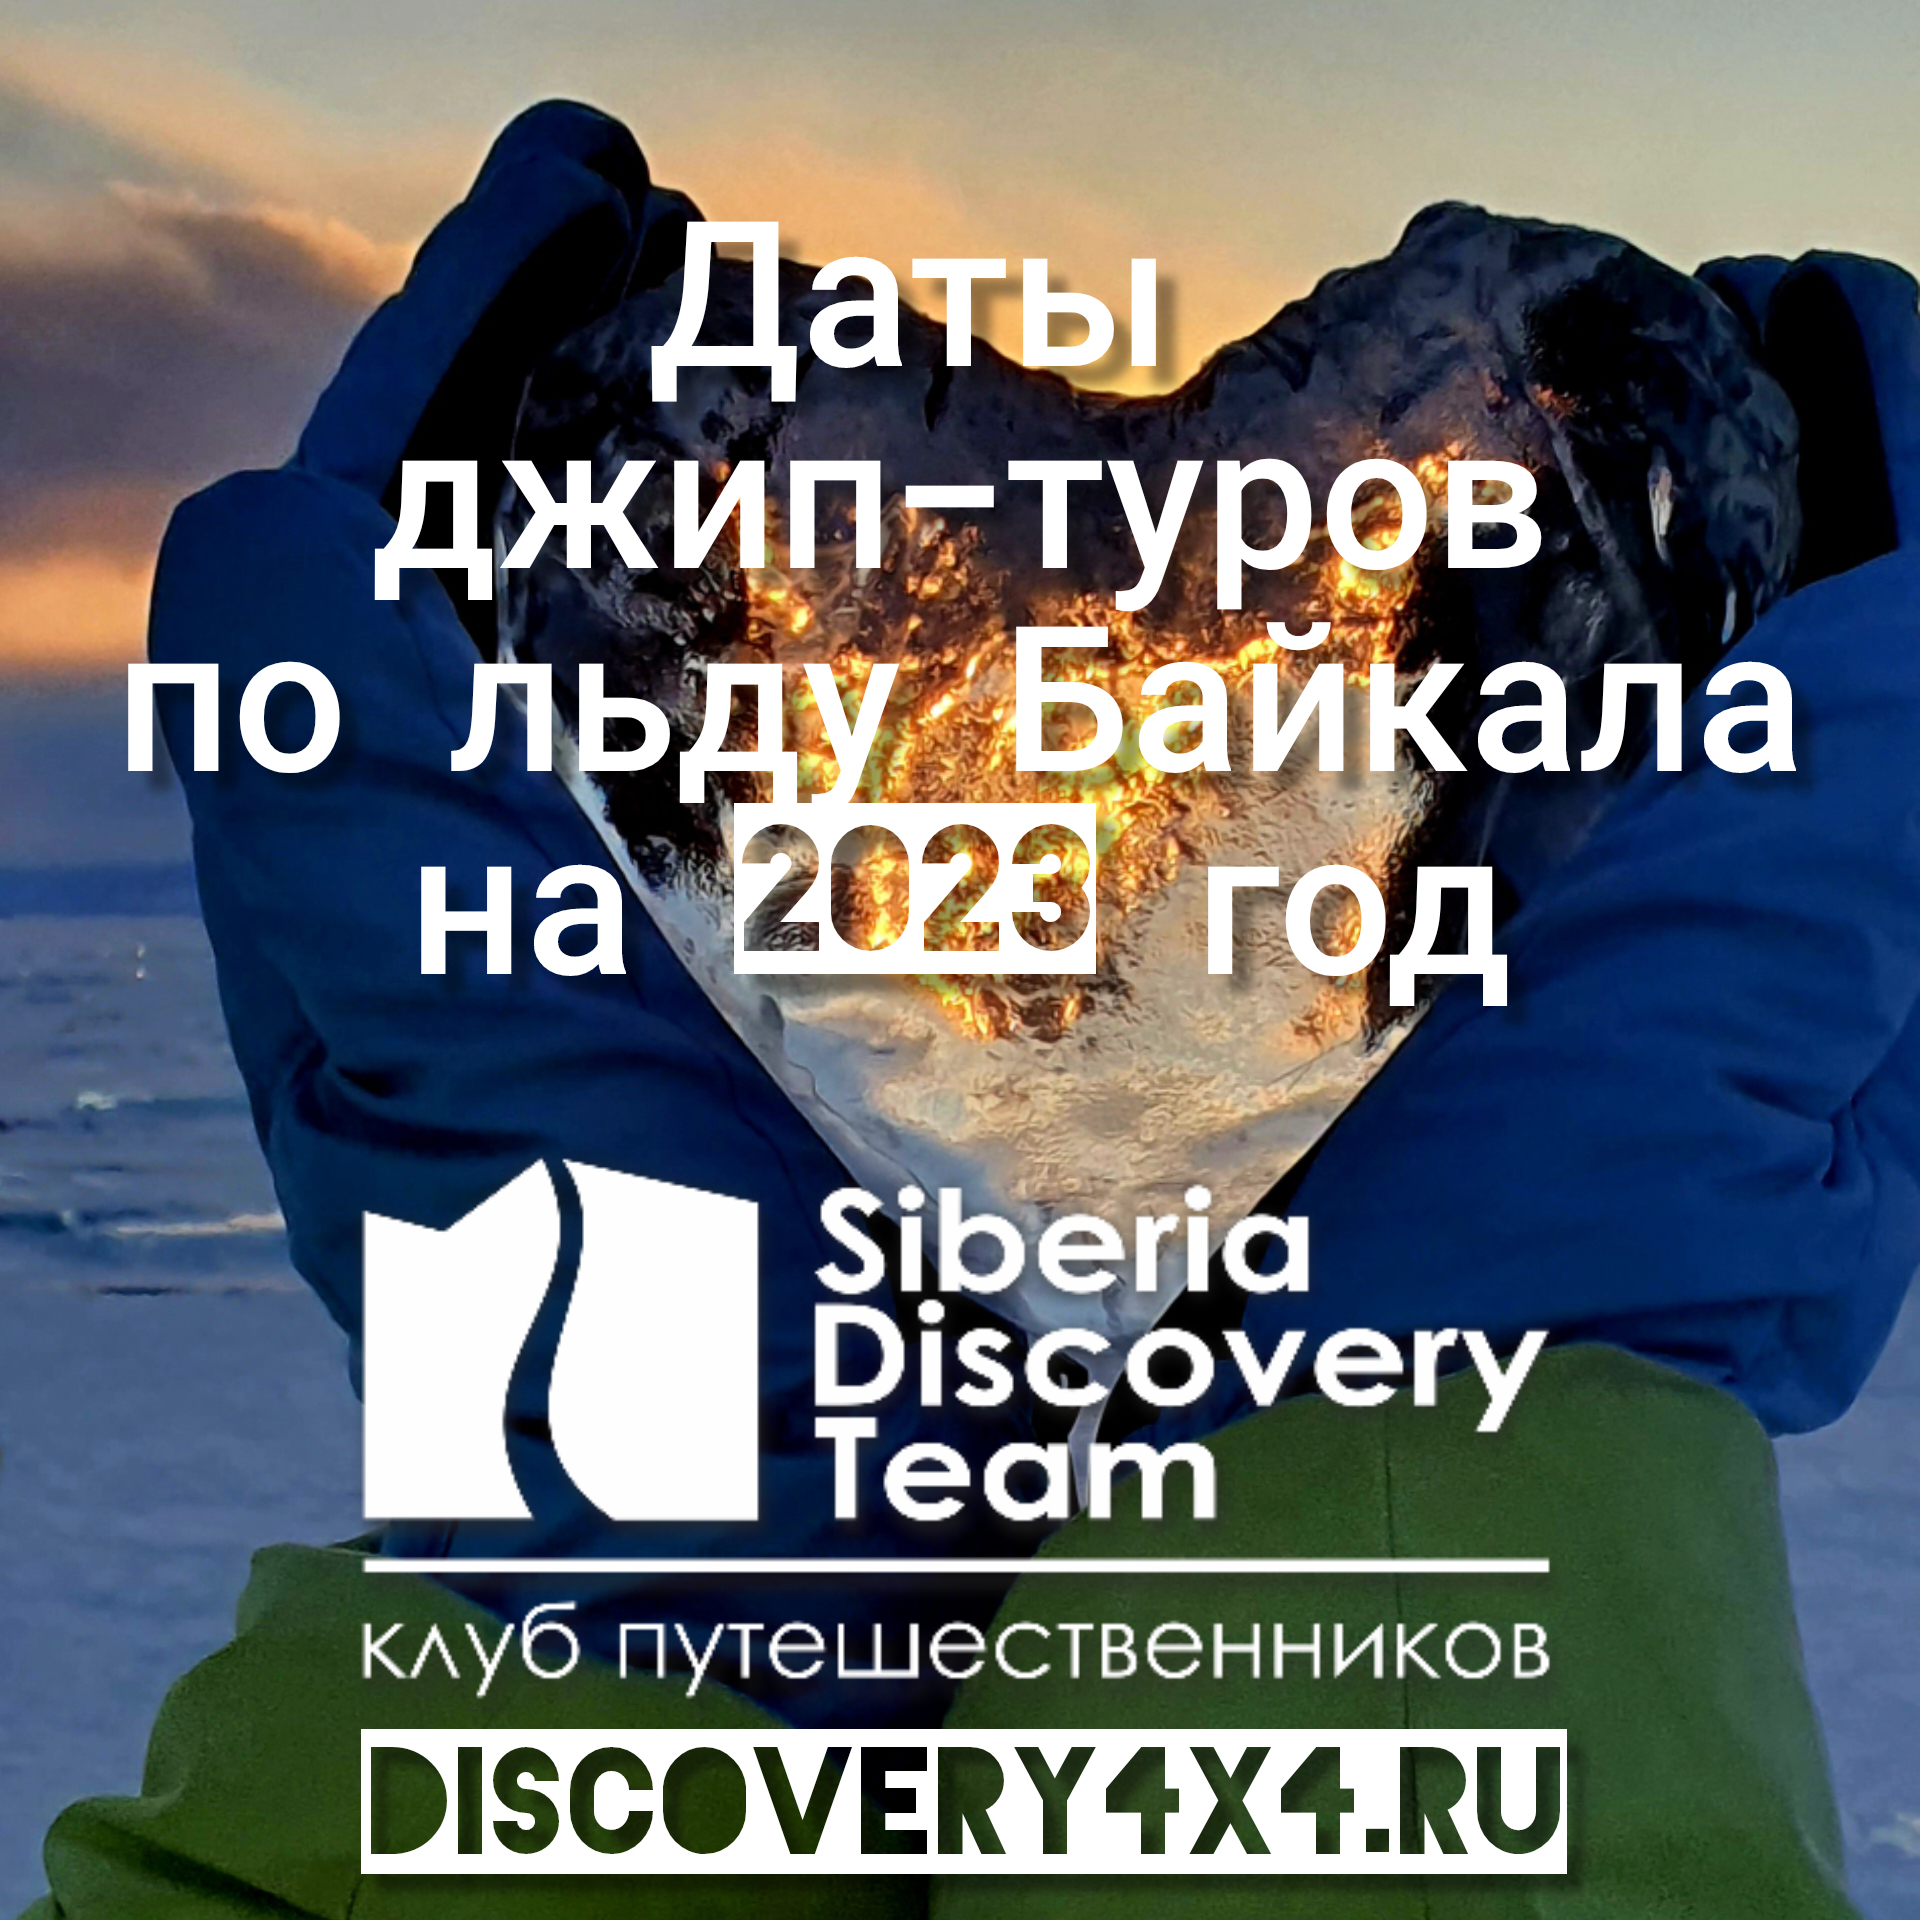 Даты джип-туров на Лед Байкала в 2023 году (февраль-март)